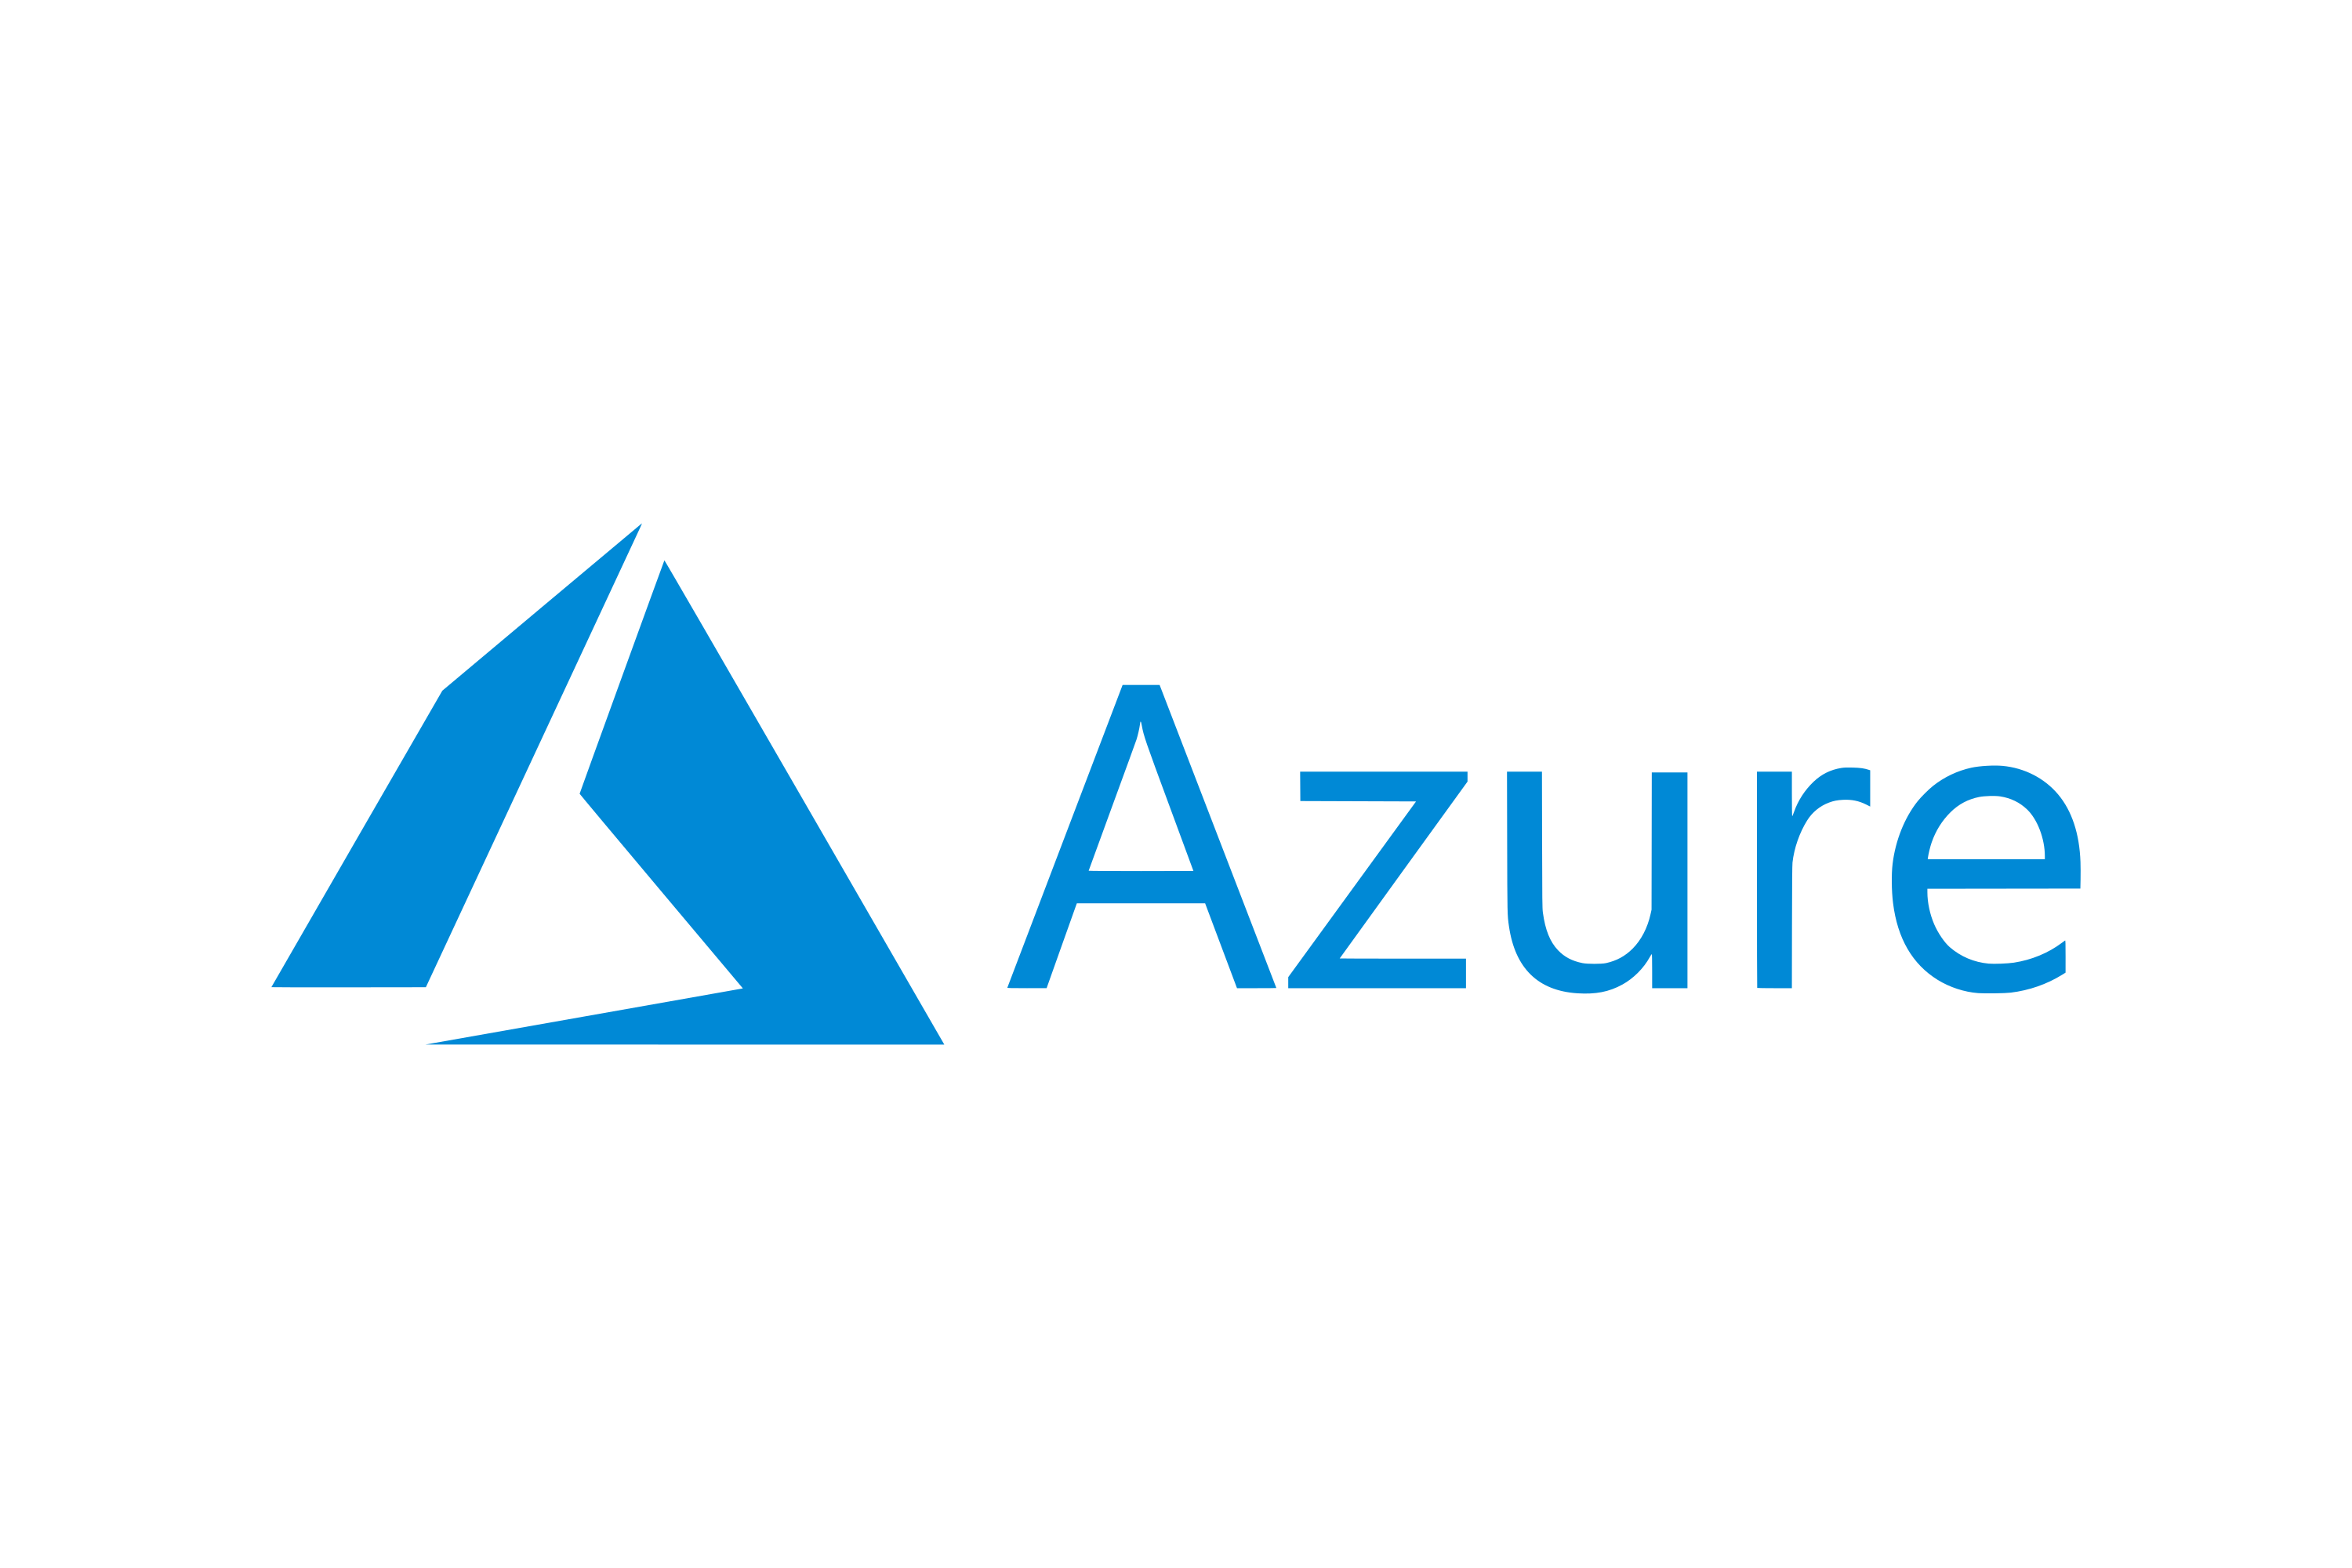 azure-logo-about-us-image